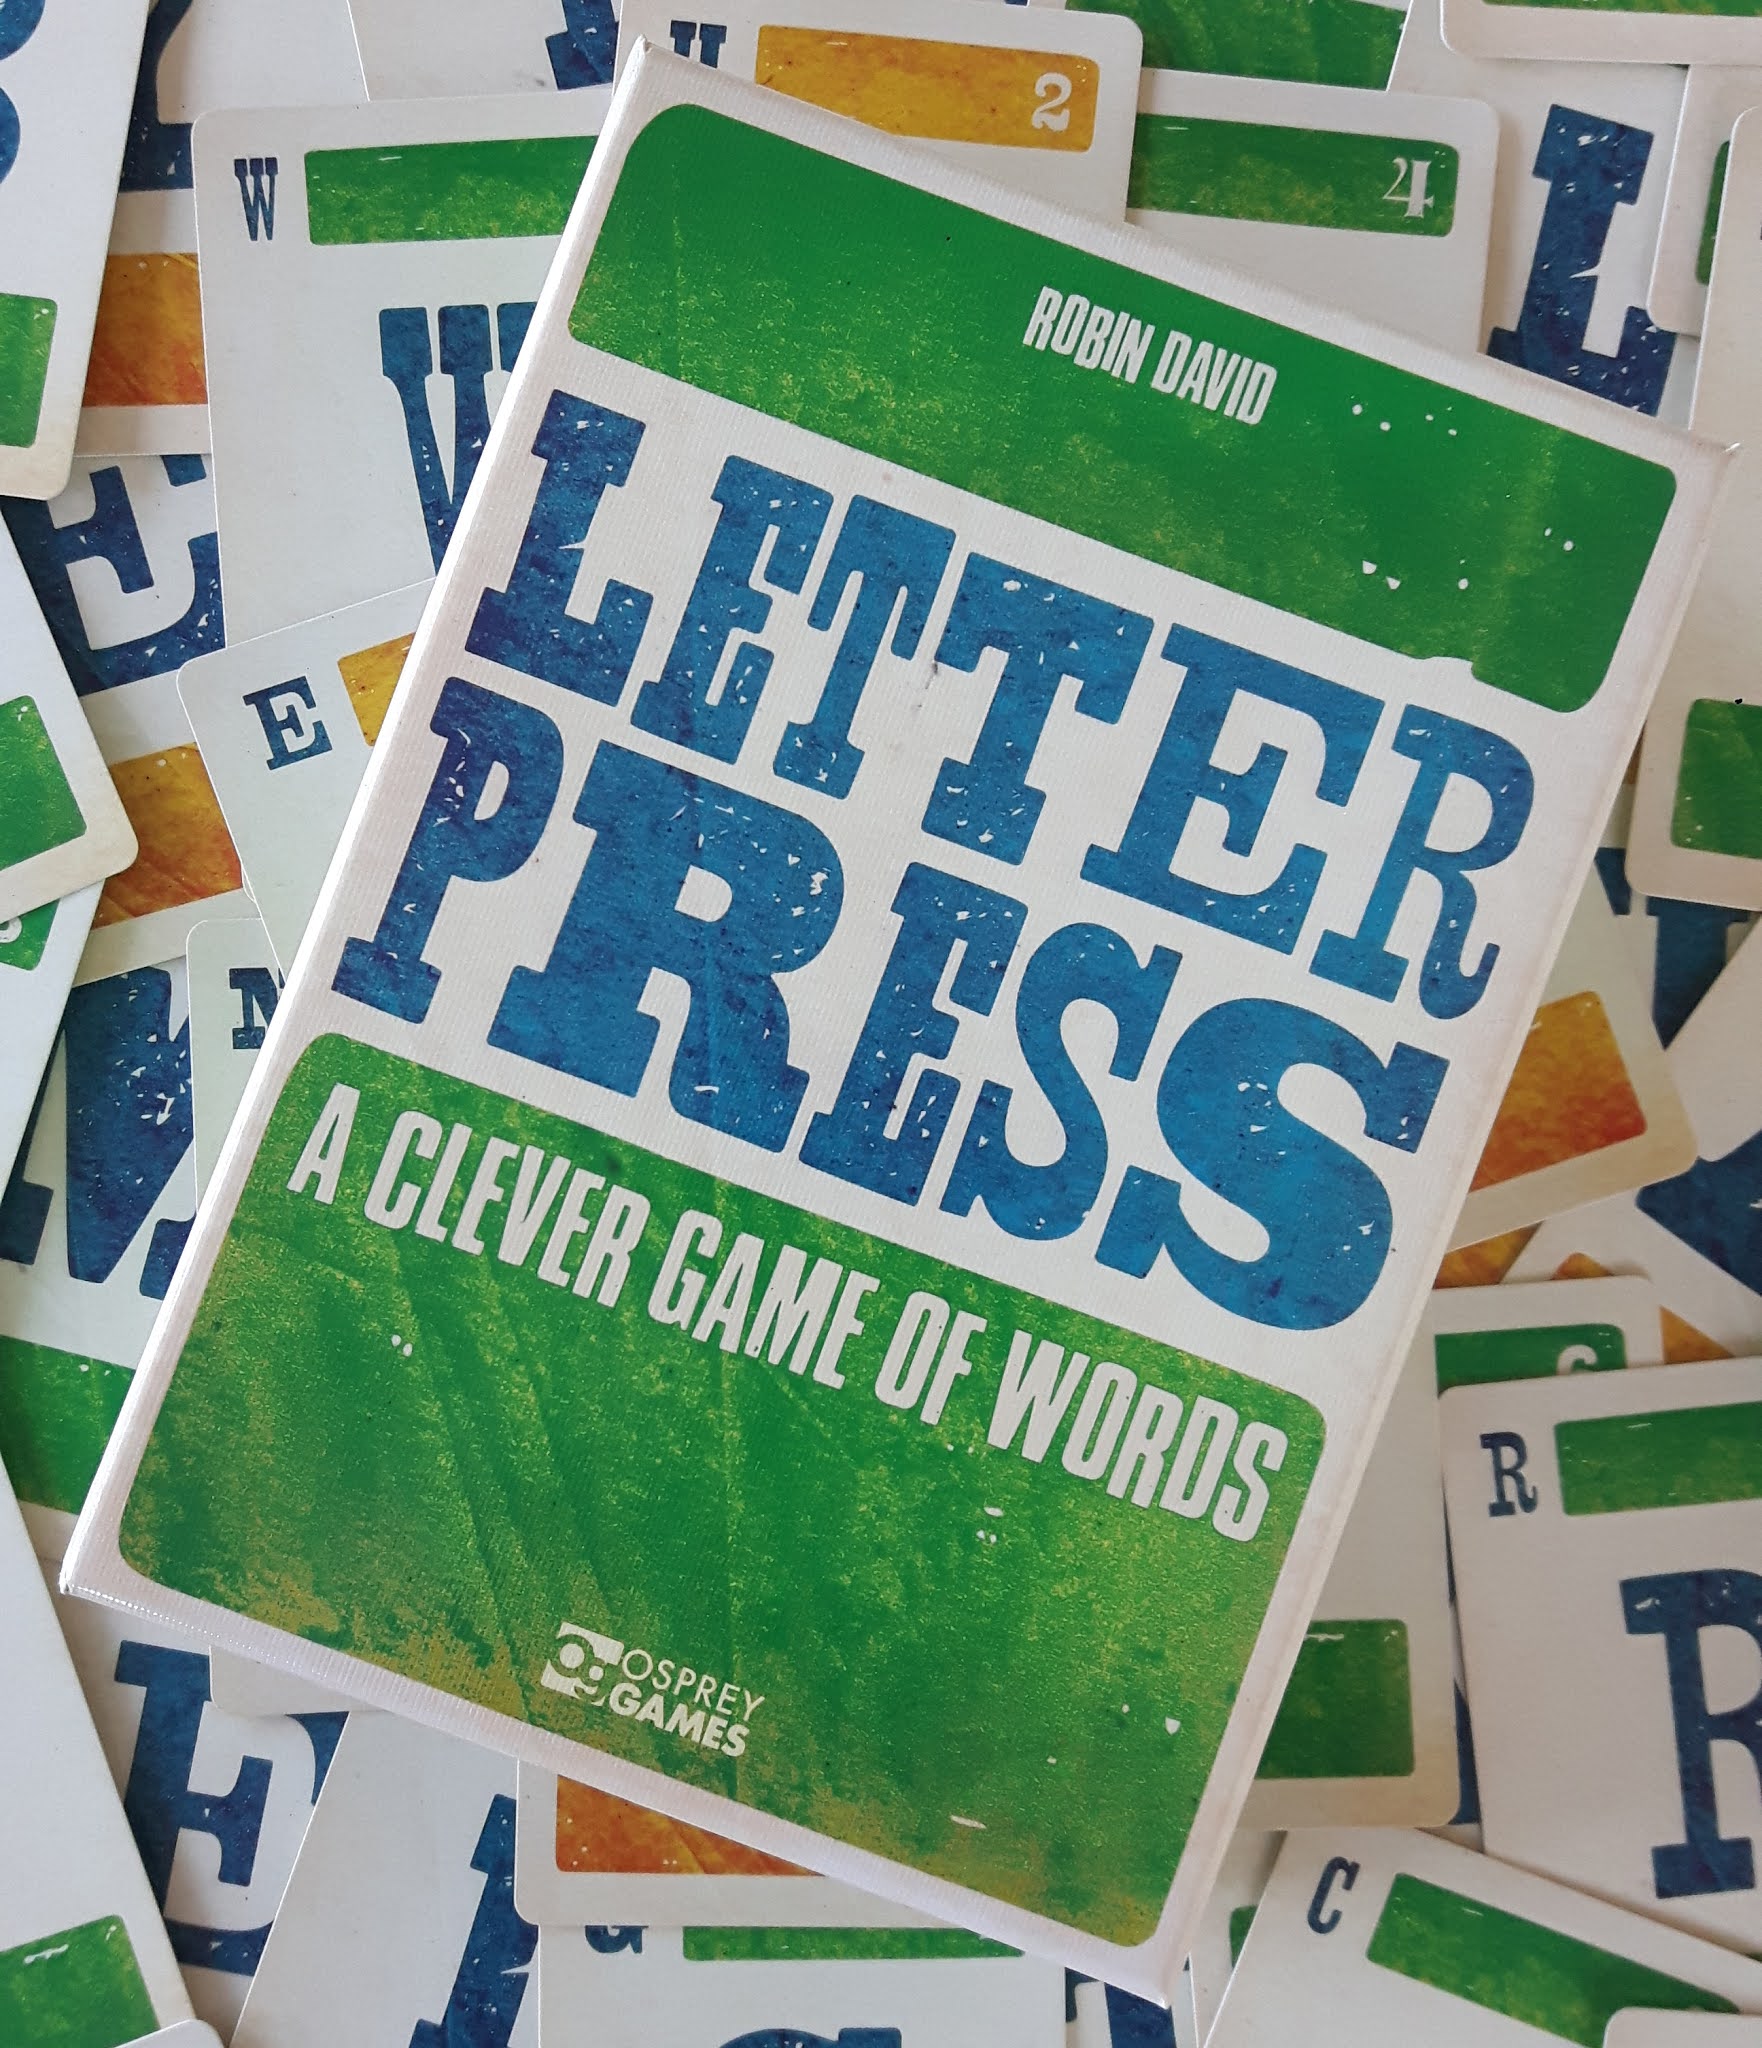 Letterpress promotional image.